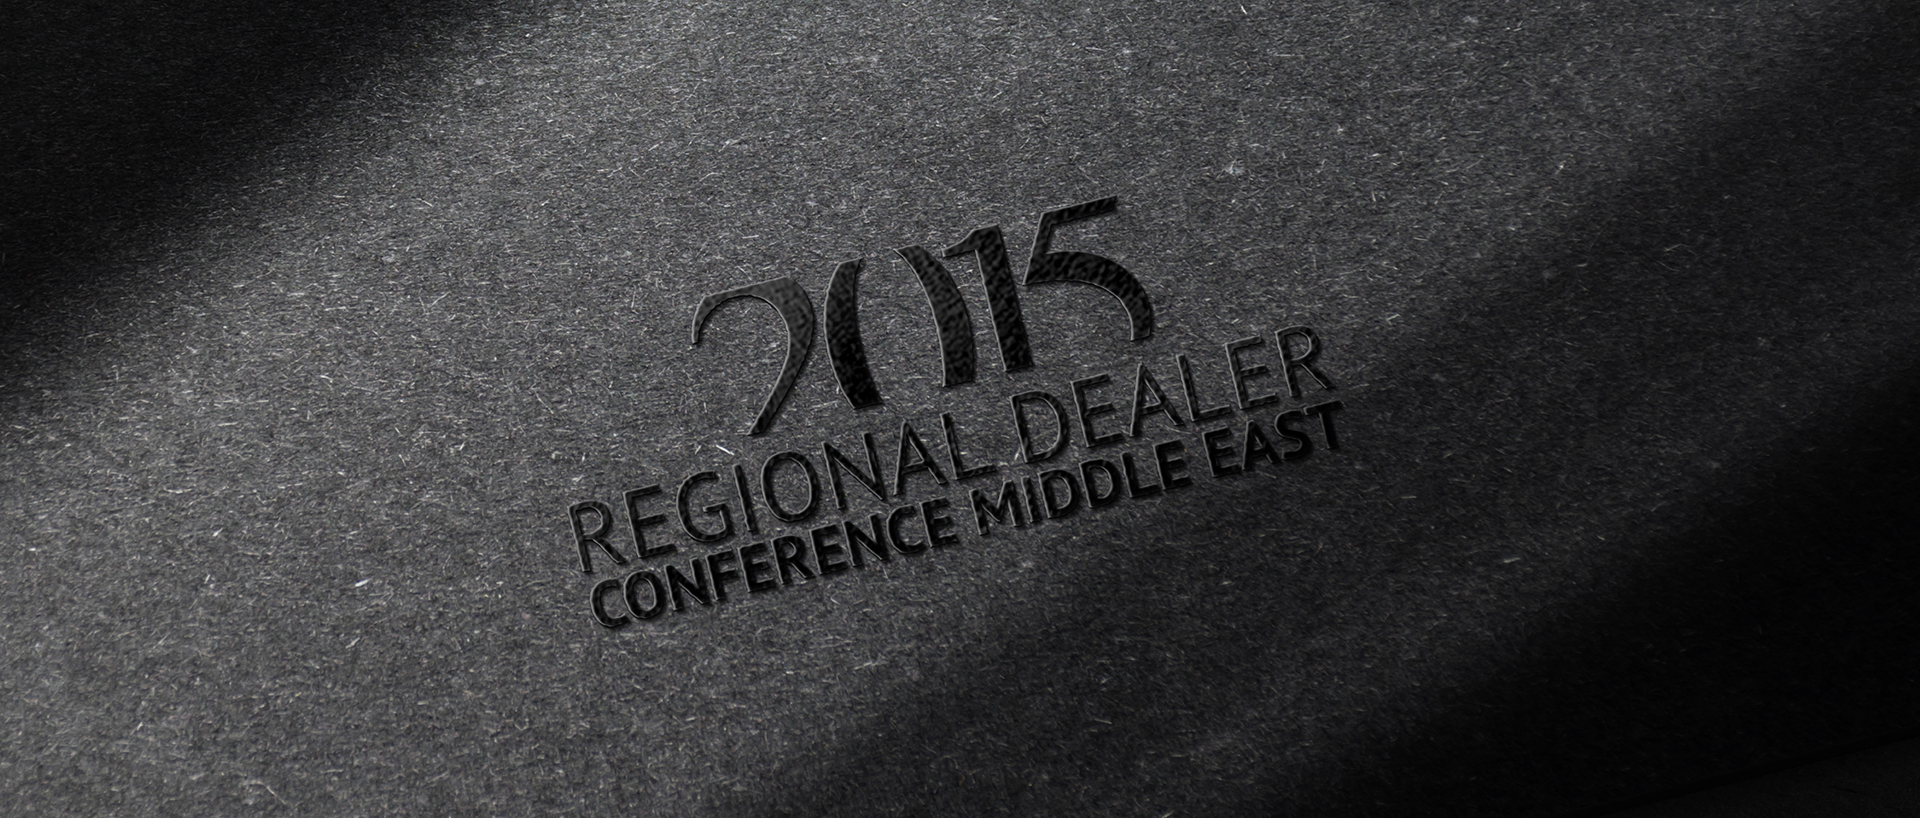 Rolls-Royce Dealer Conference 2015